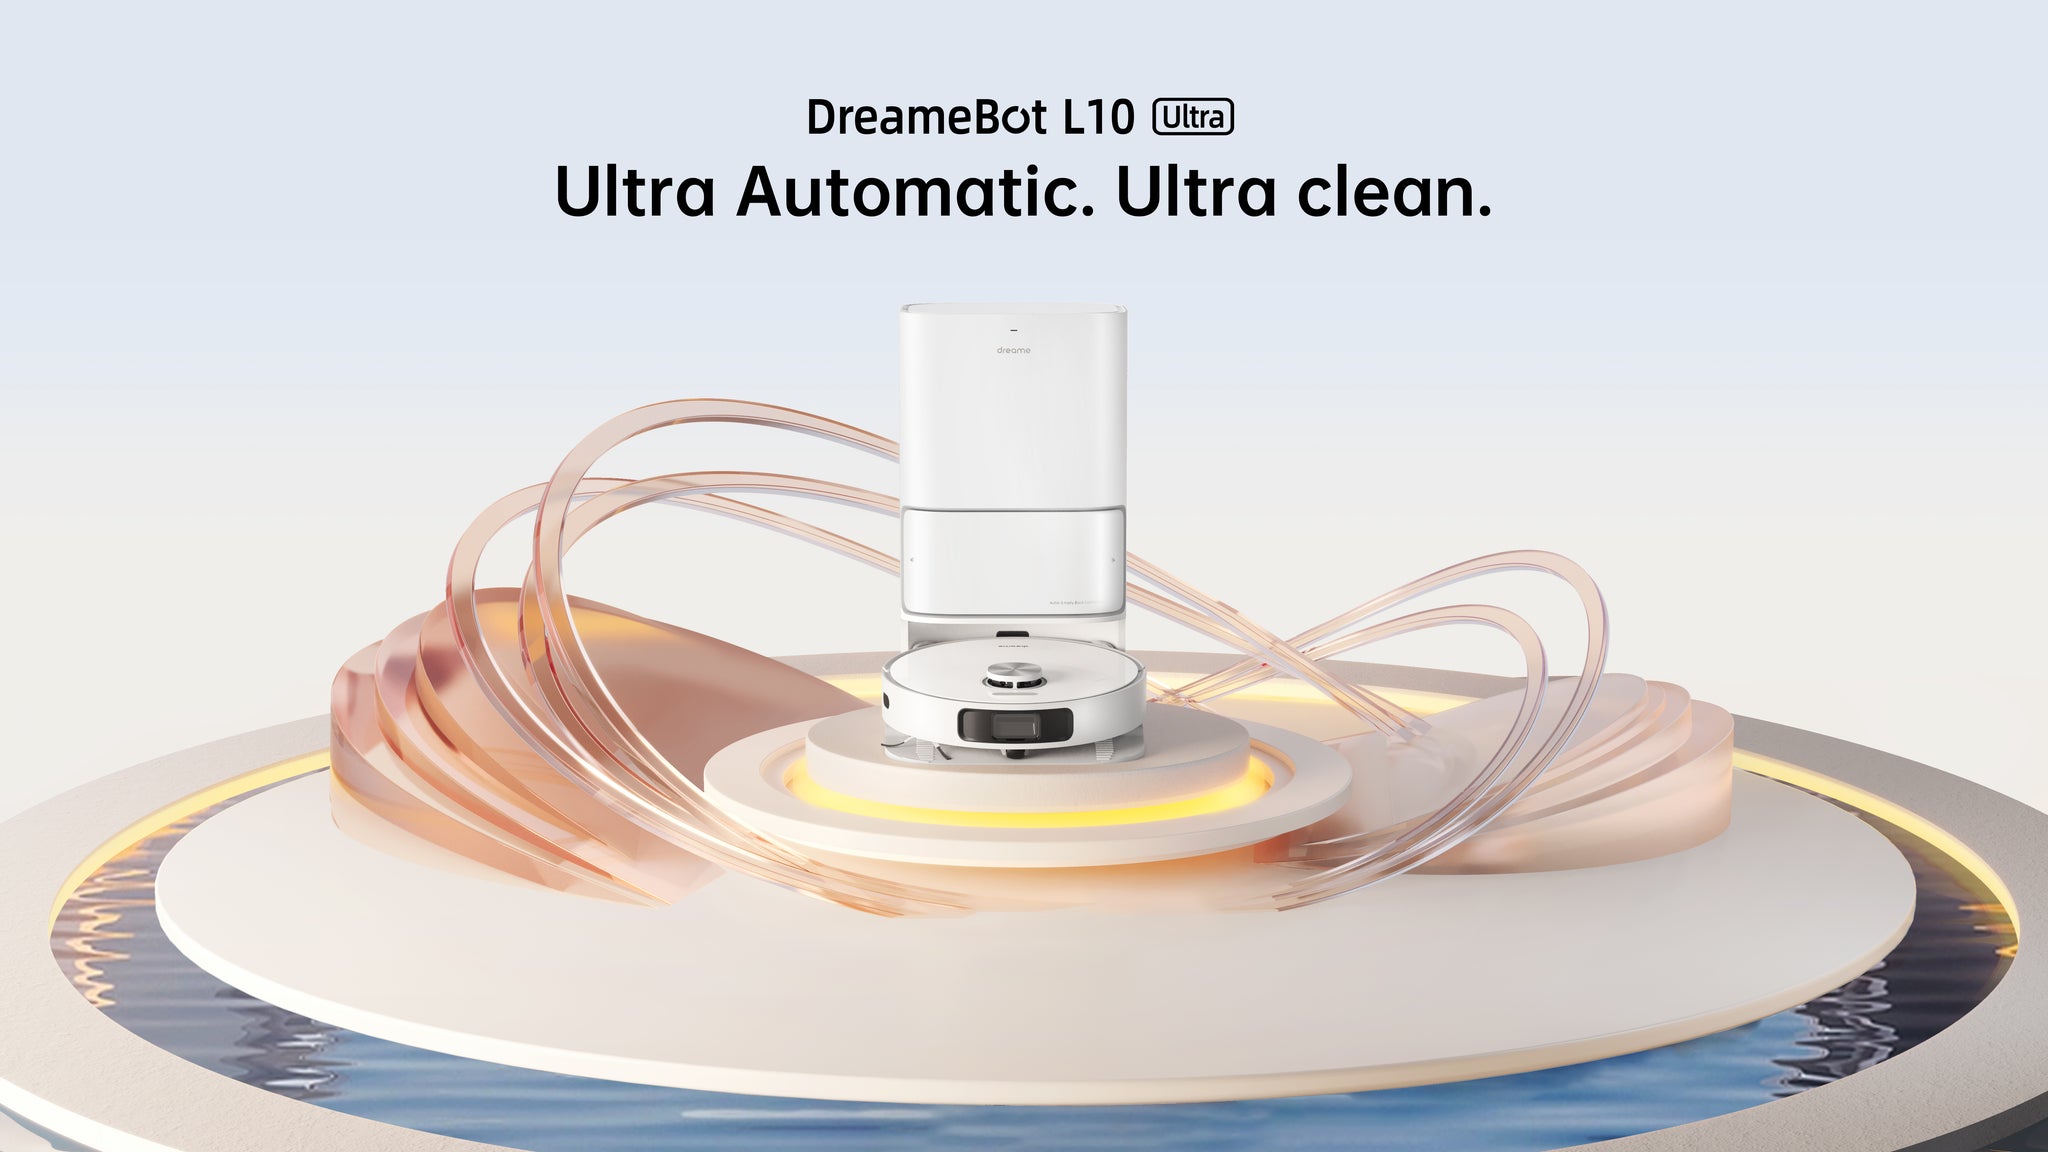 DreameBot L10 Ultra sköter städningen helt automatiskt i upp till 60 dagar